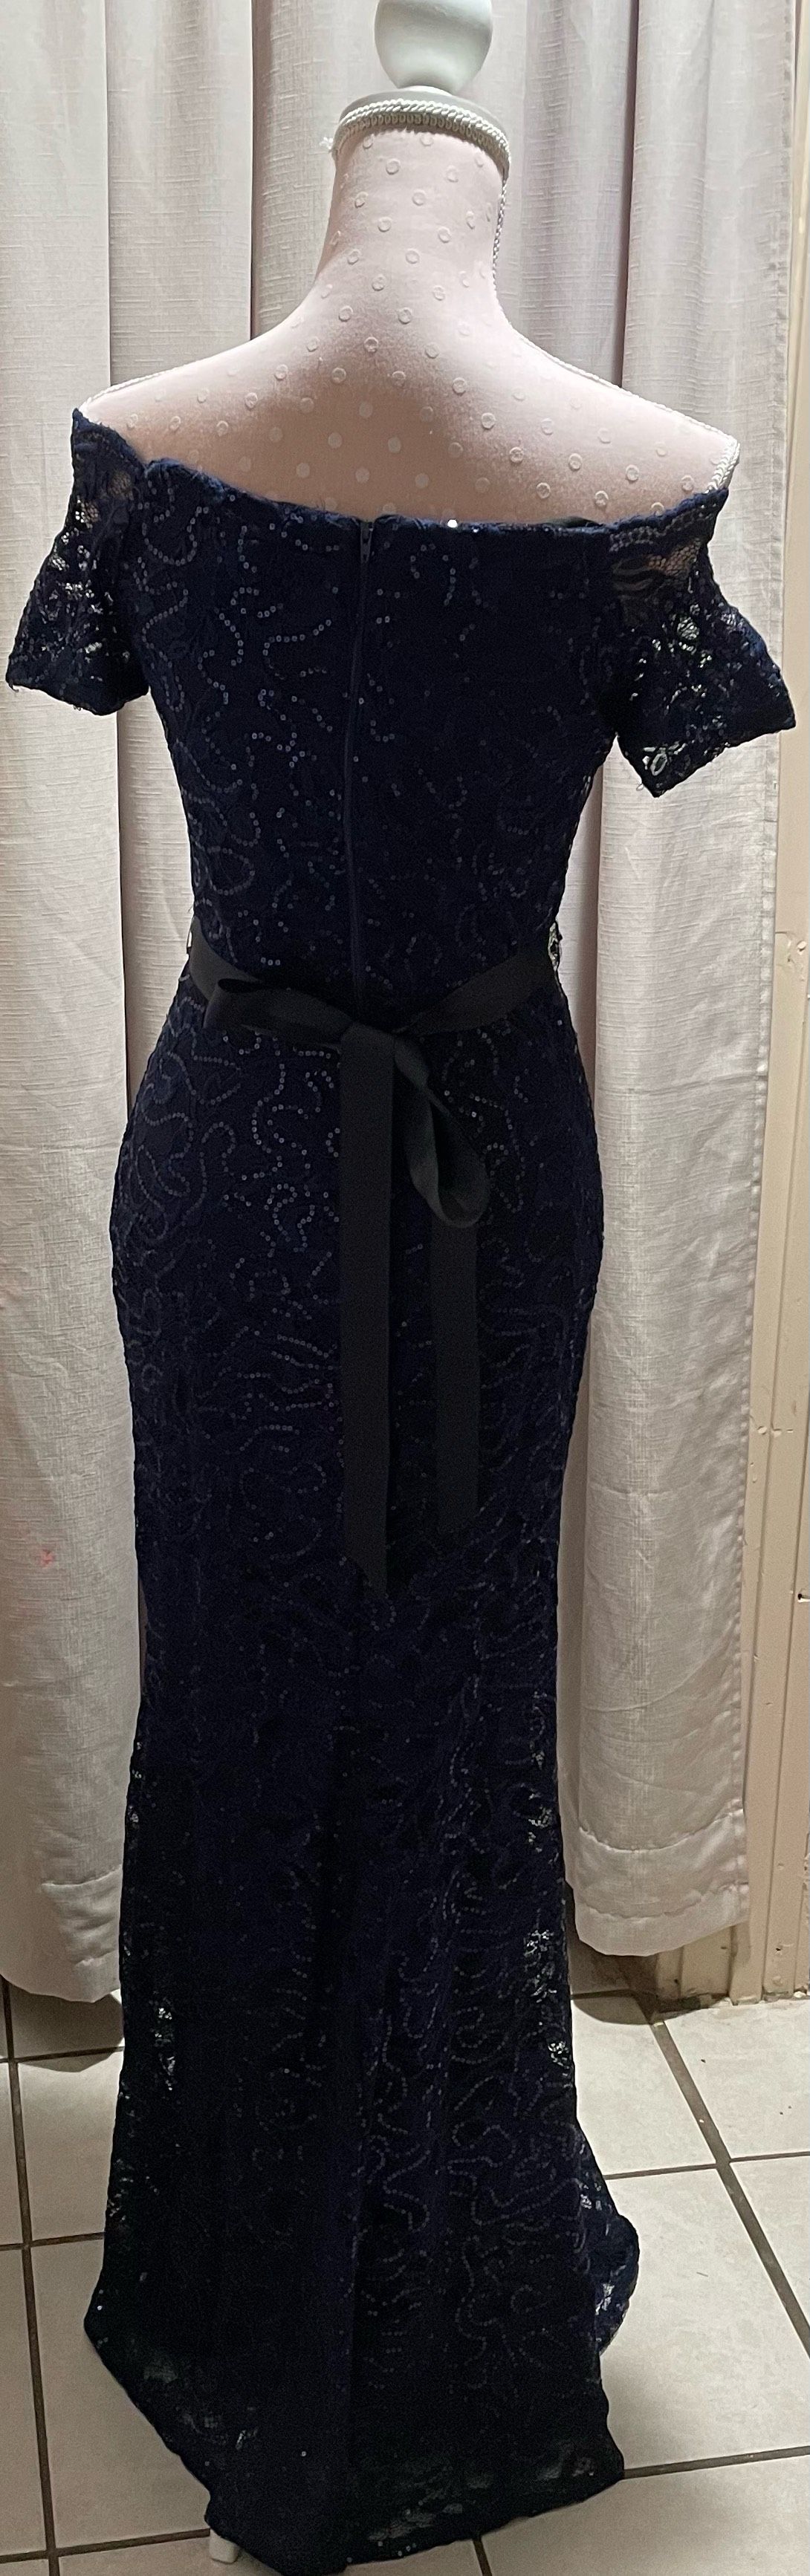 Size 6 Off The Shoulder Navy Blue Side Slit Dress on Queenly